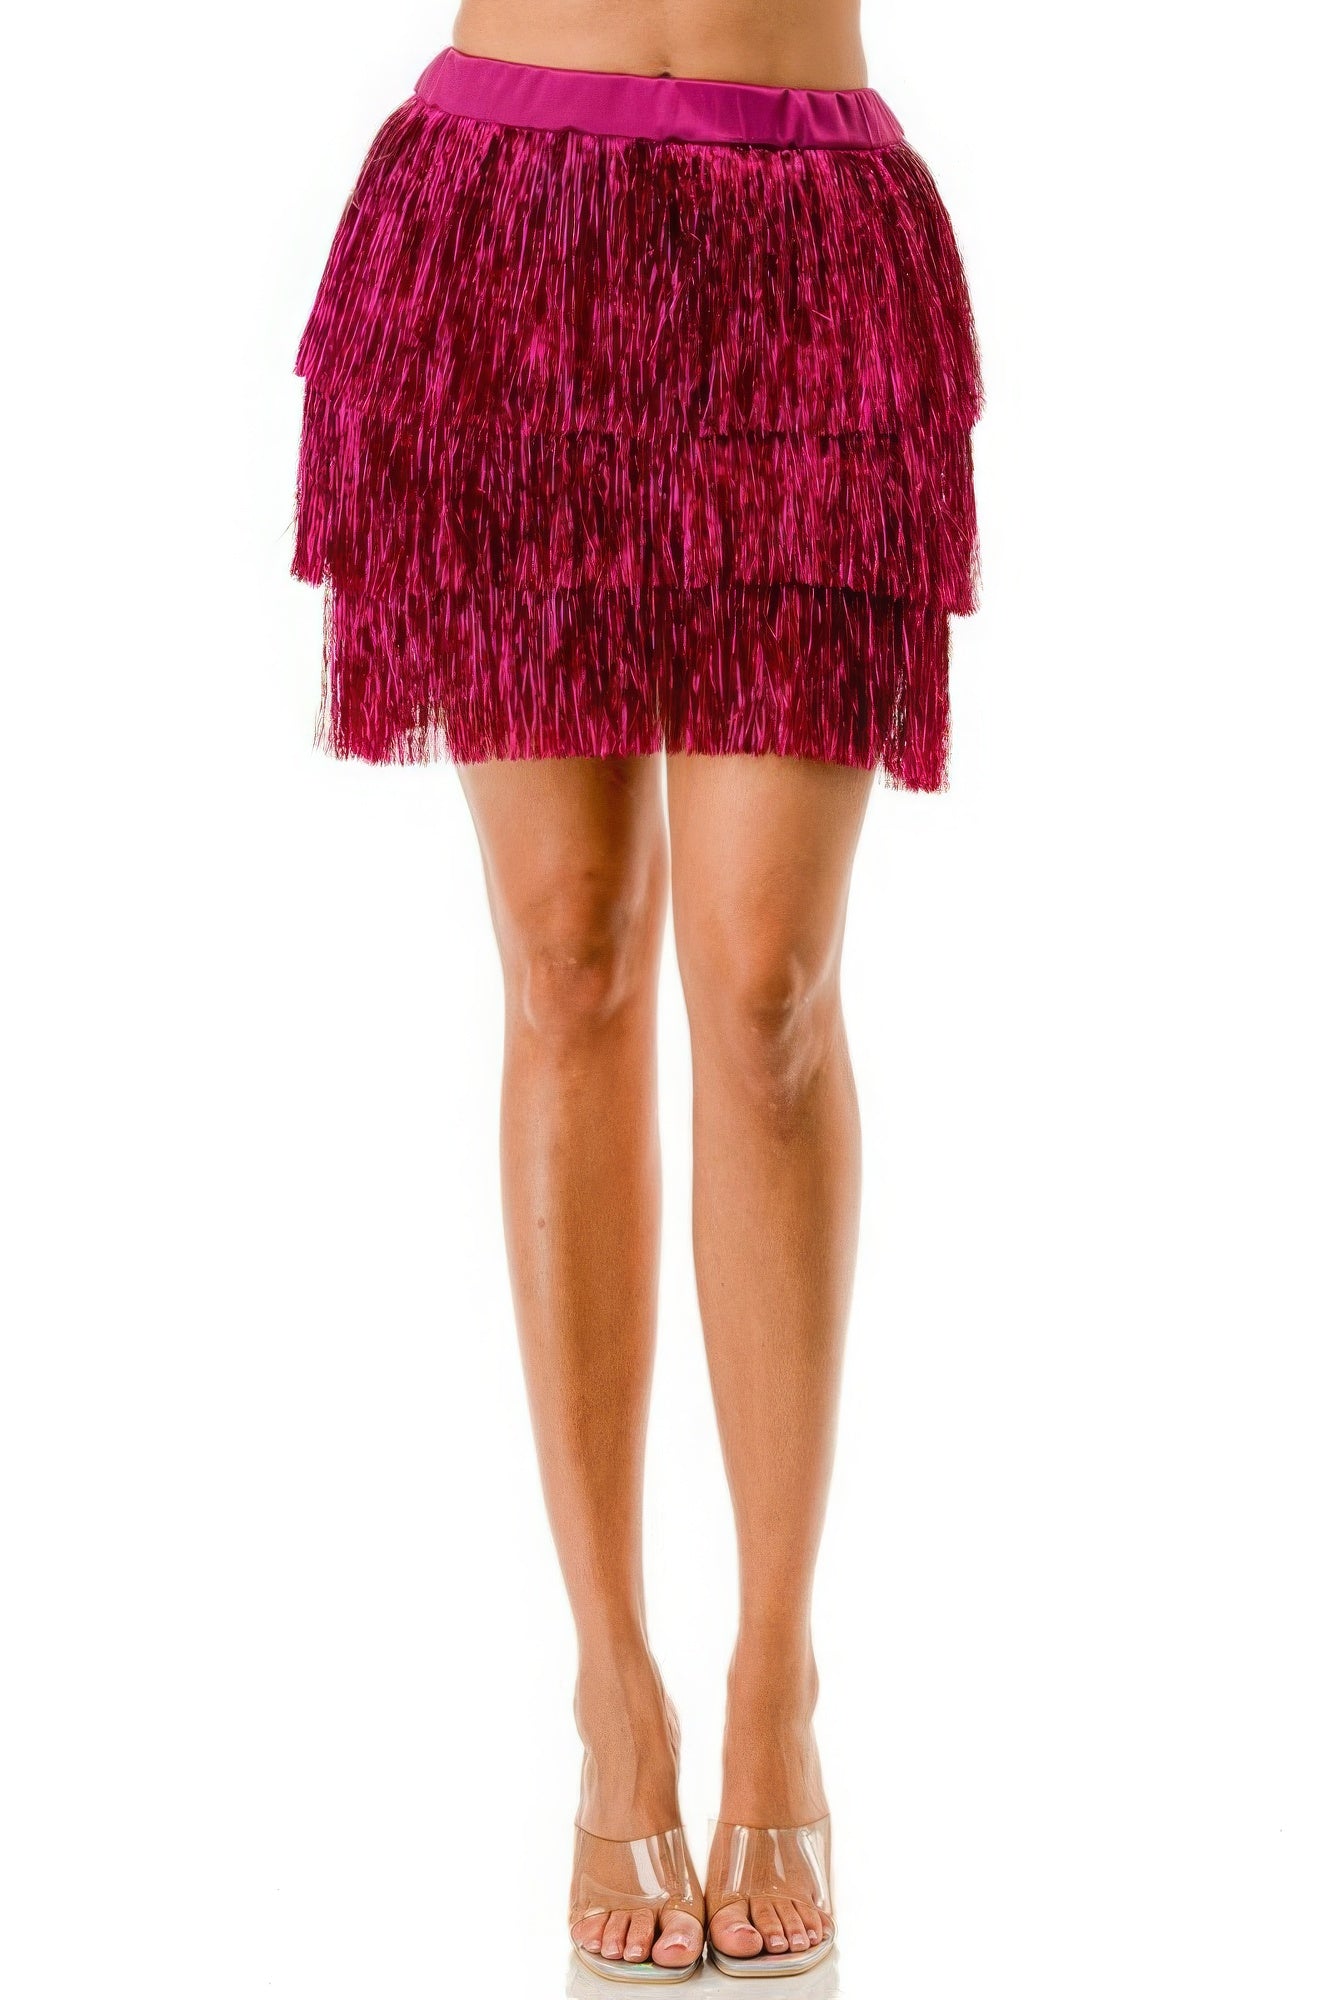 Pink - Fringe Metallic Skirt - womens skirt at TFC&H Co.